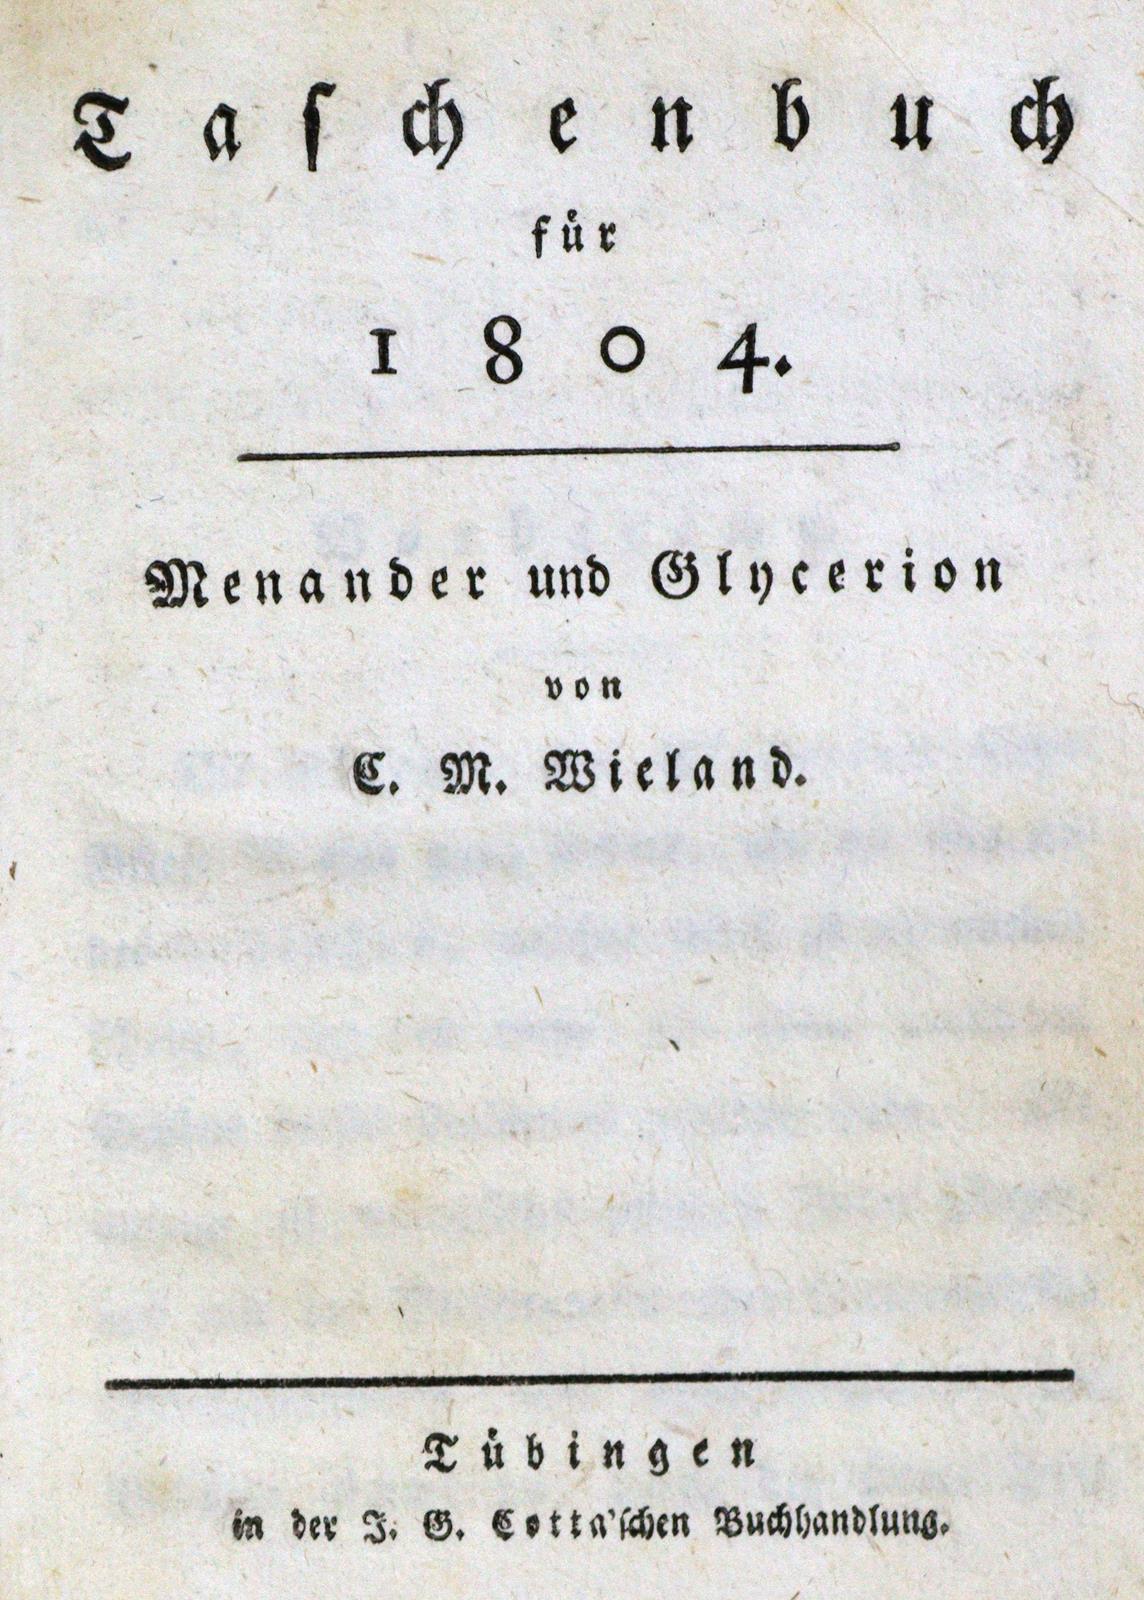 Taschenbuch für 1804. | Bild Nr.2